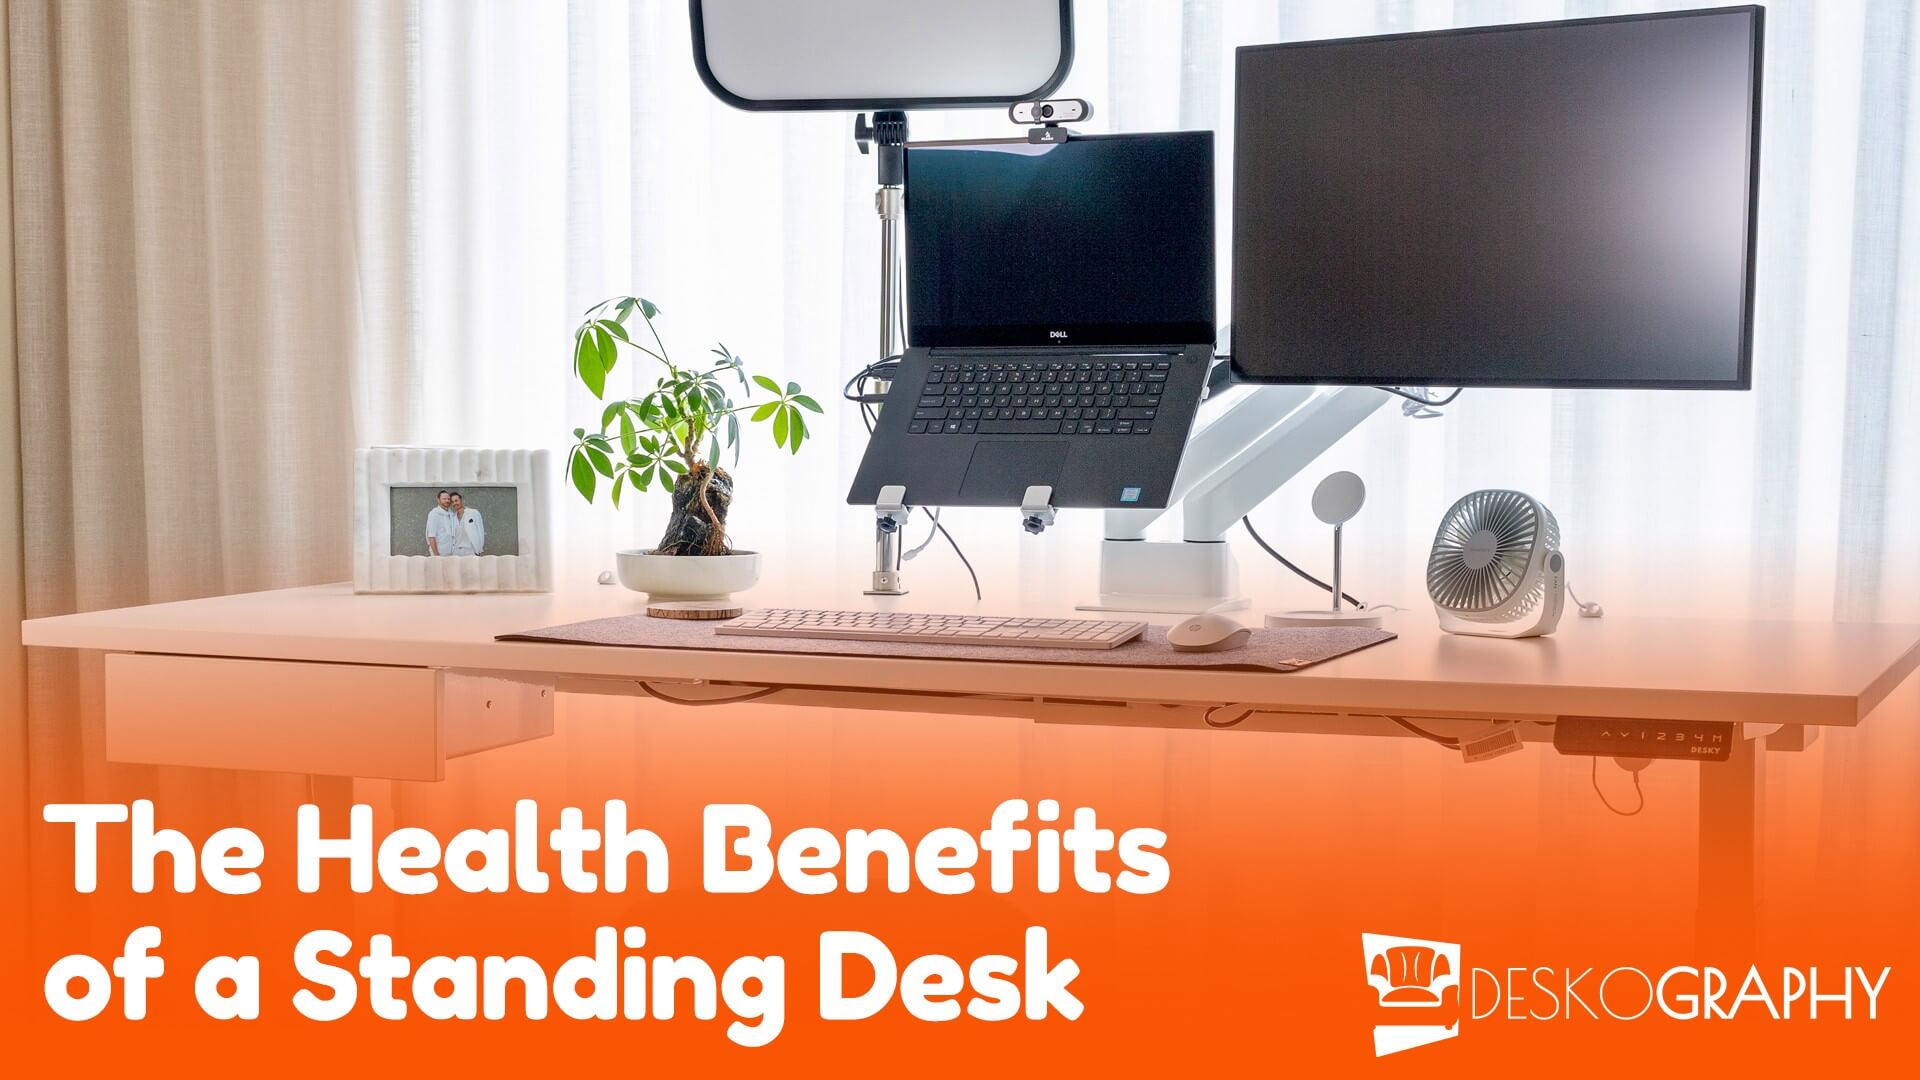 The Health Benefits of Standing Desks